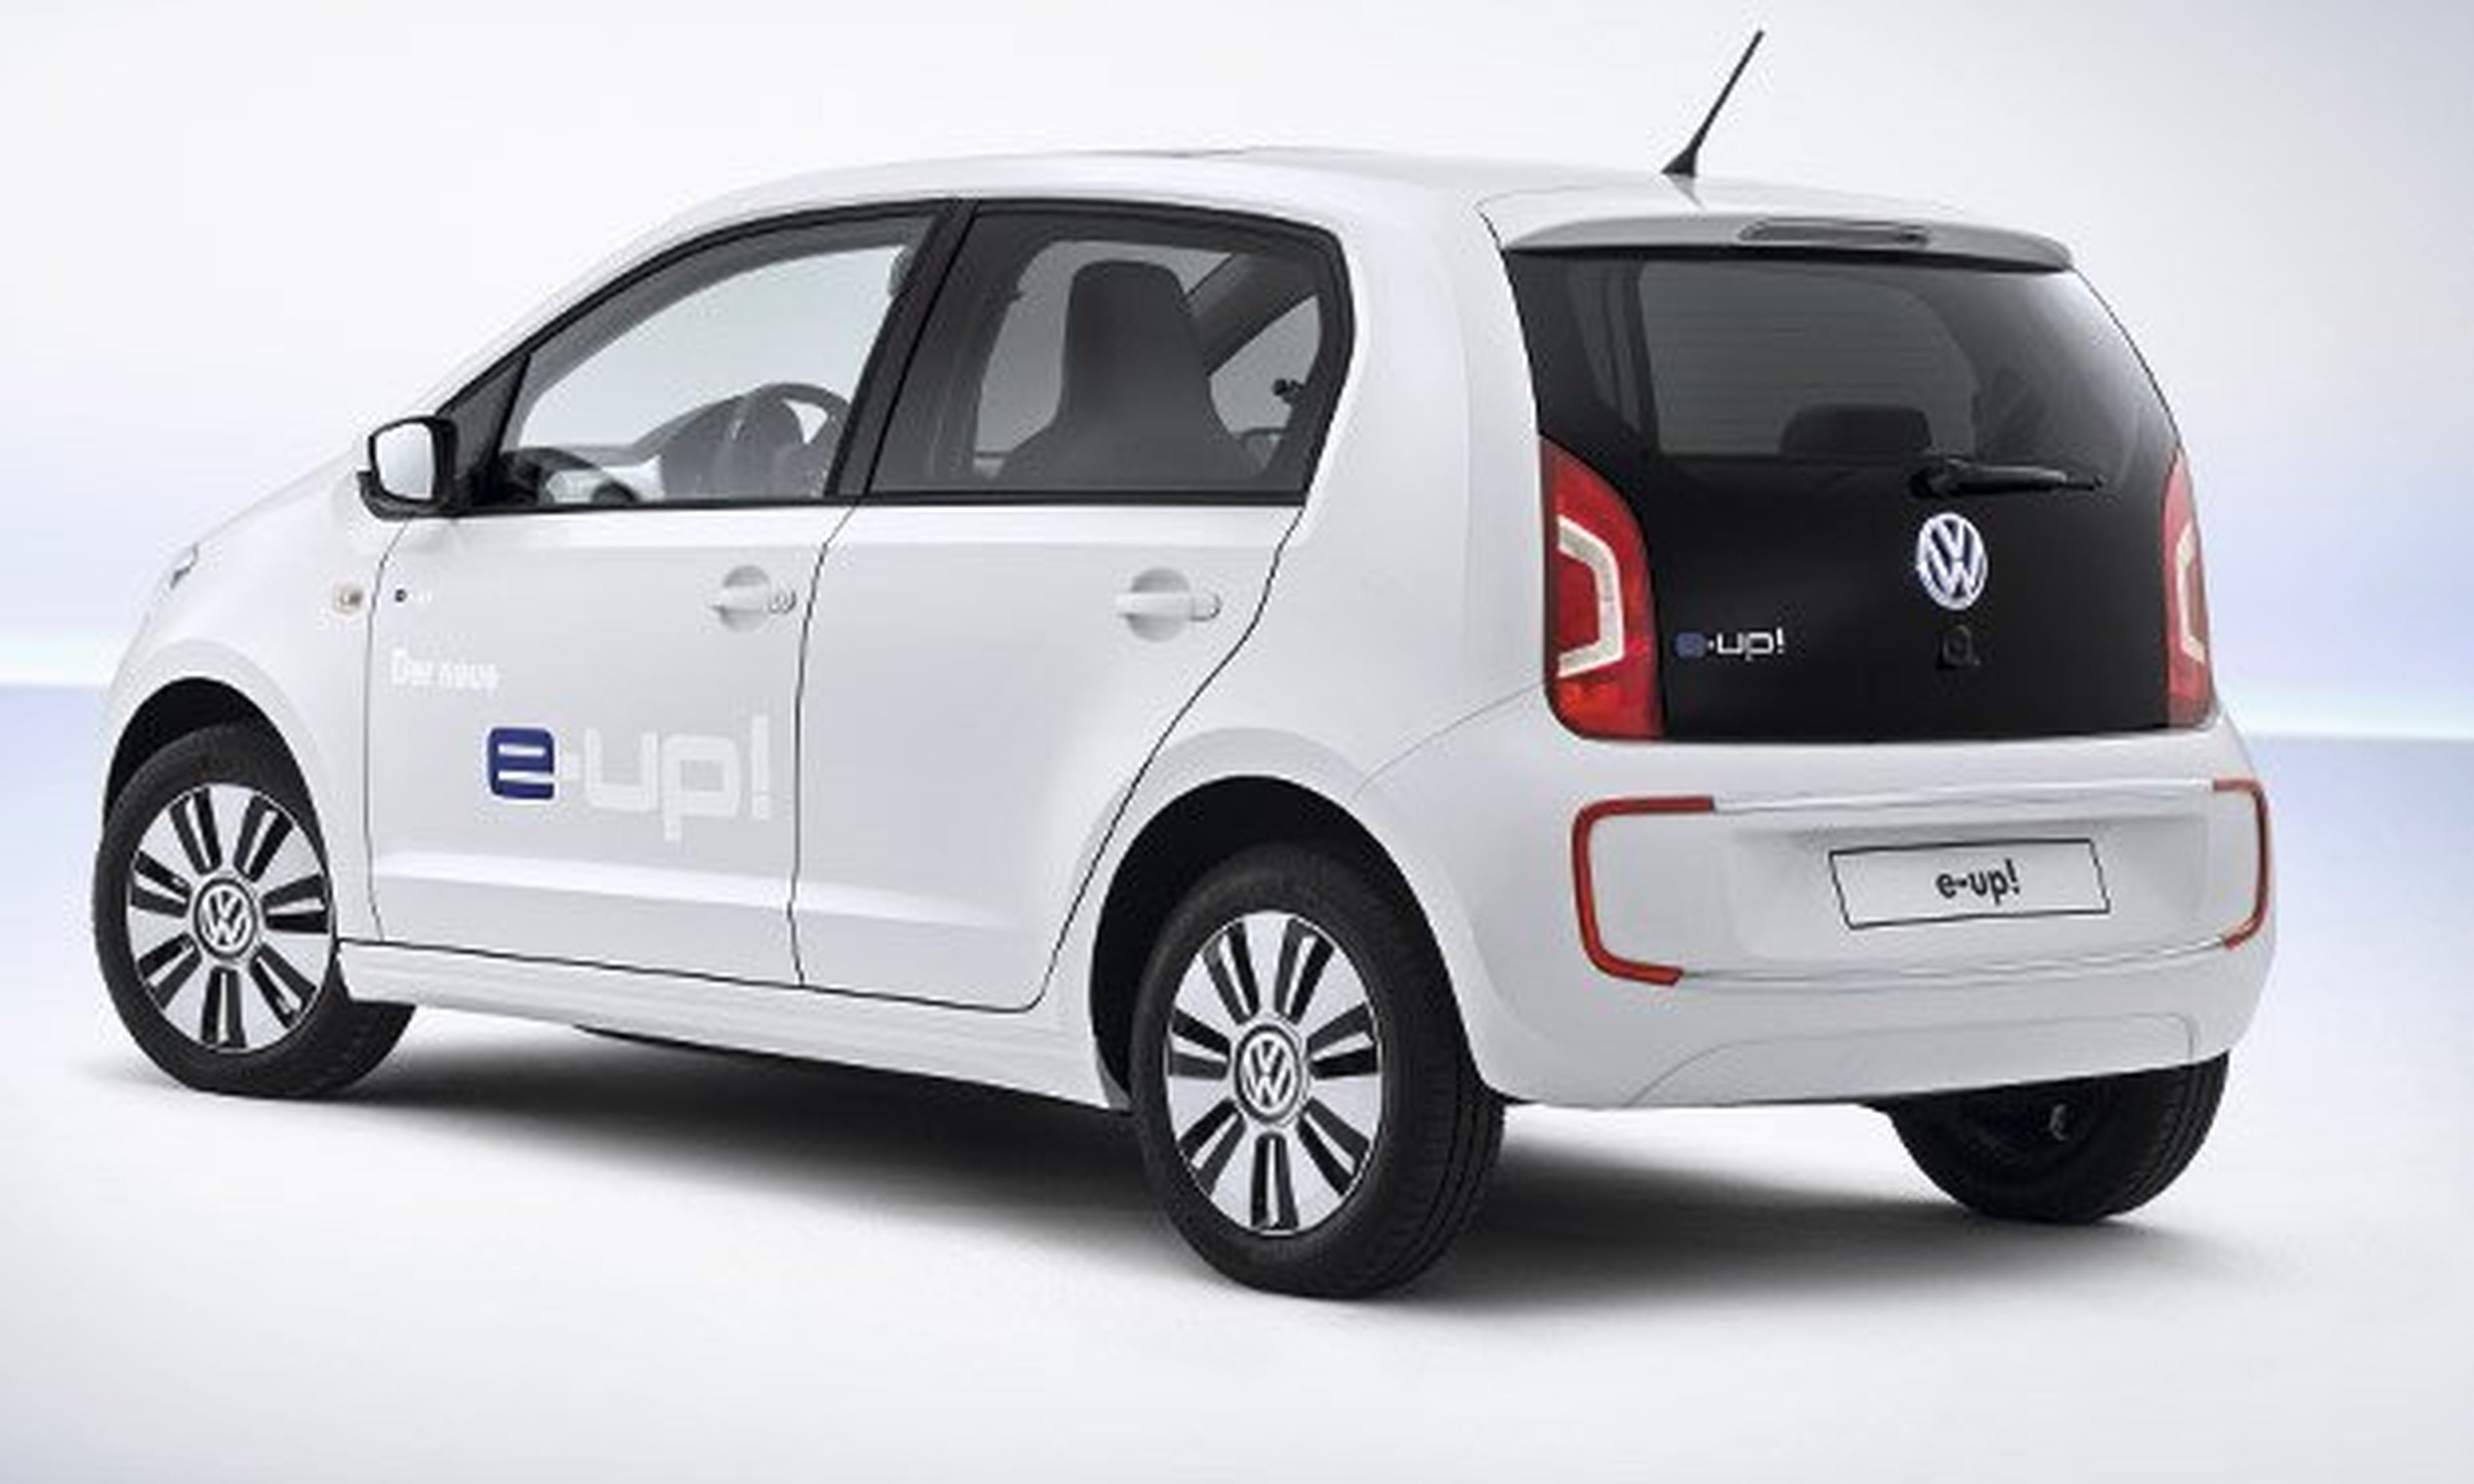 Novedades de Volkswagen en el Salón de Barcelona 2013